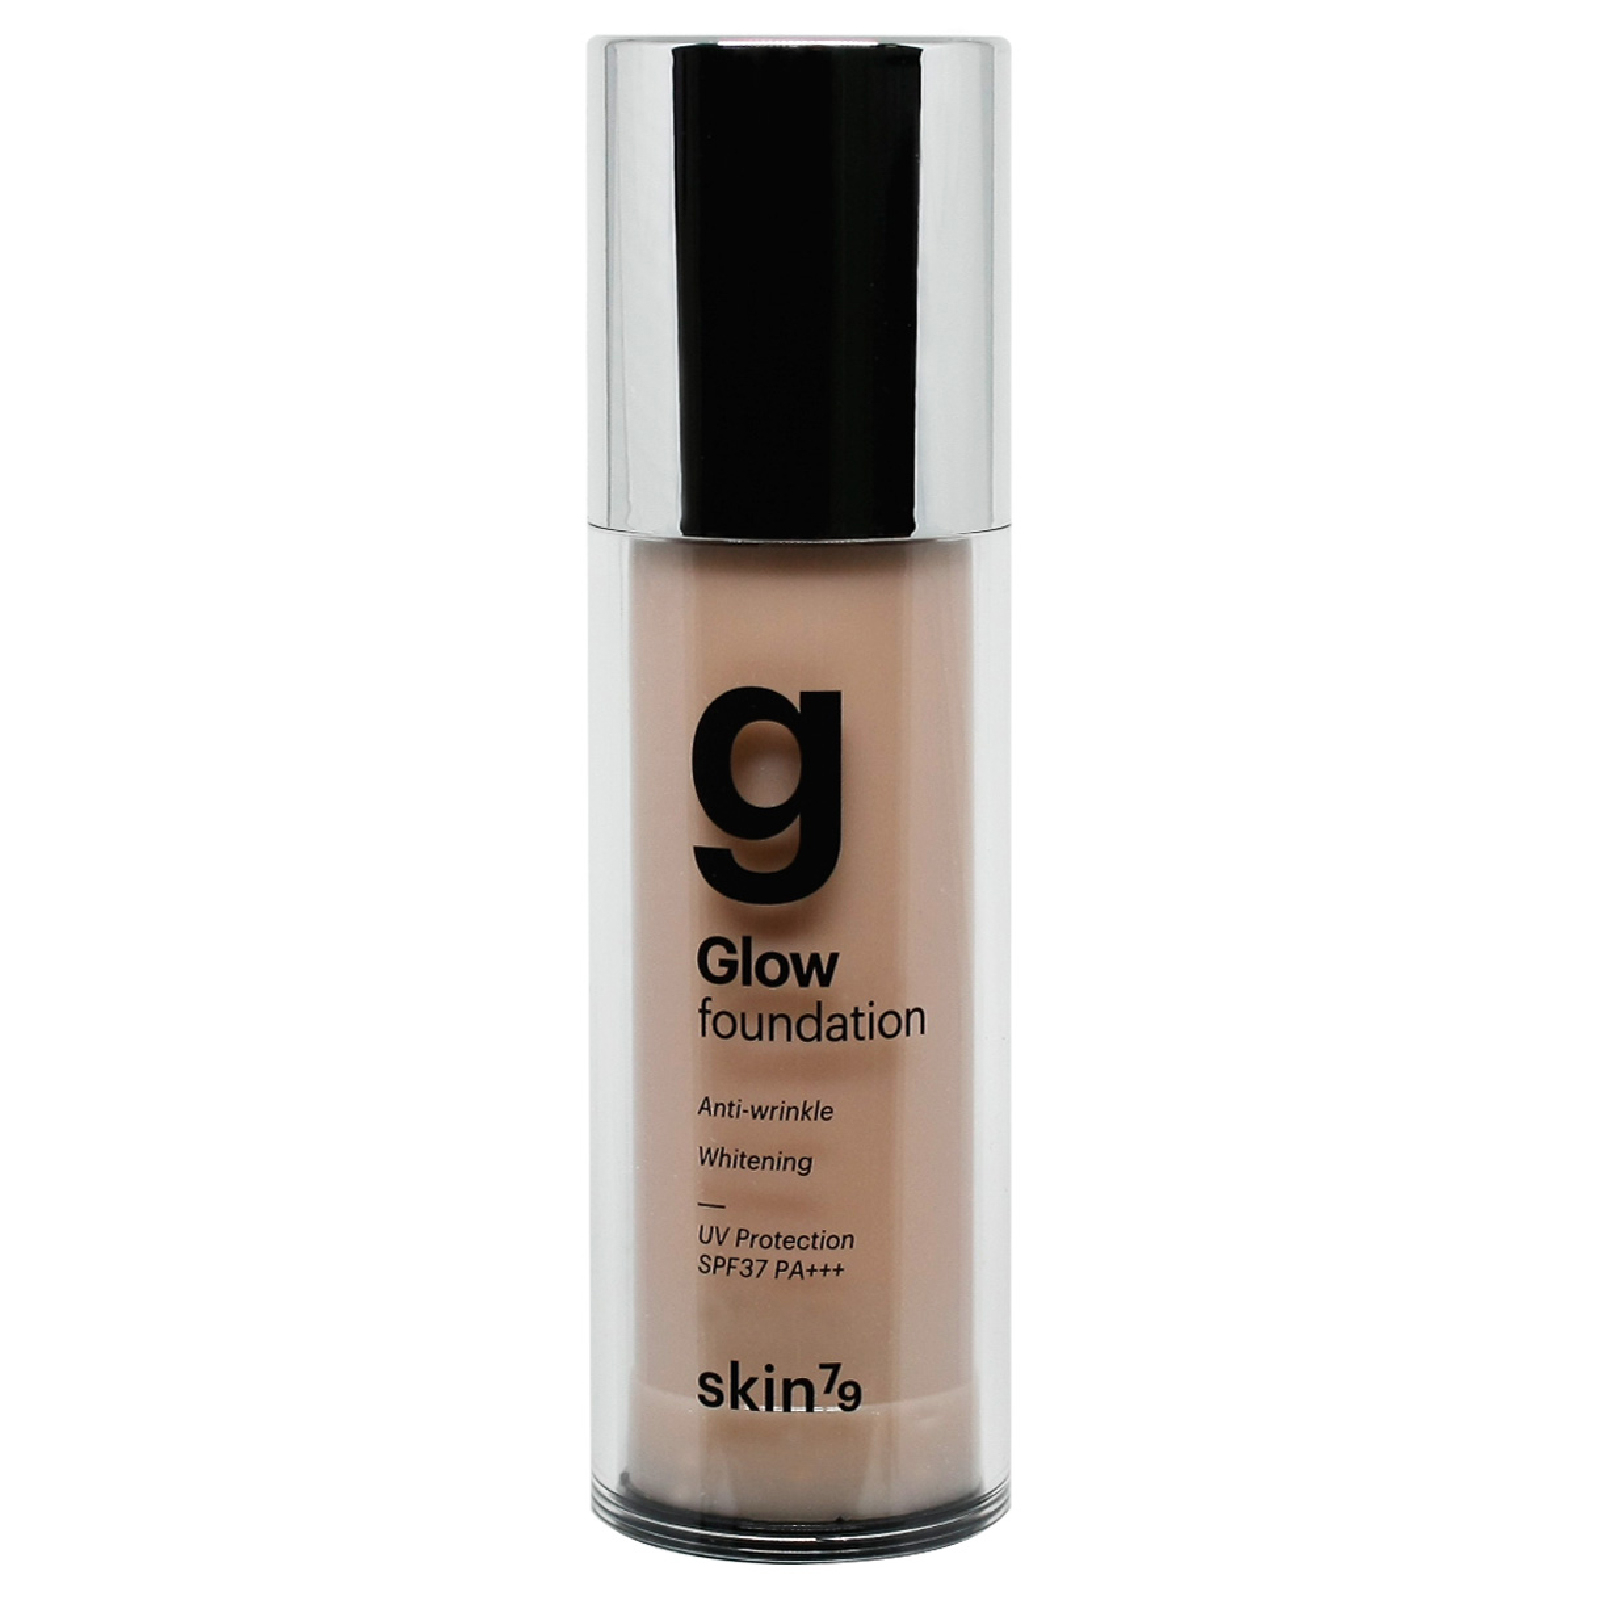 Base de maquillaje Glow con FPS 37 PA+++ n.º 23 de Skin79